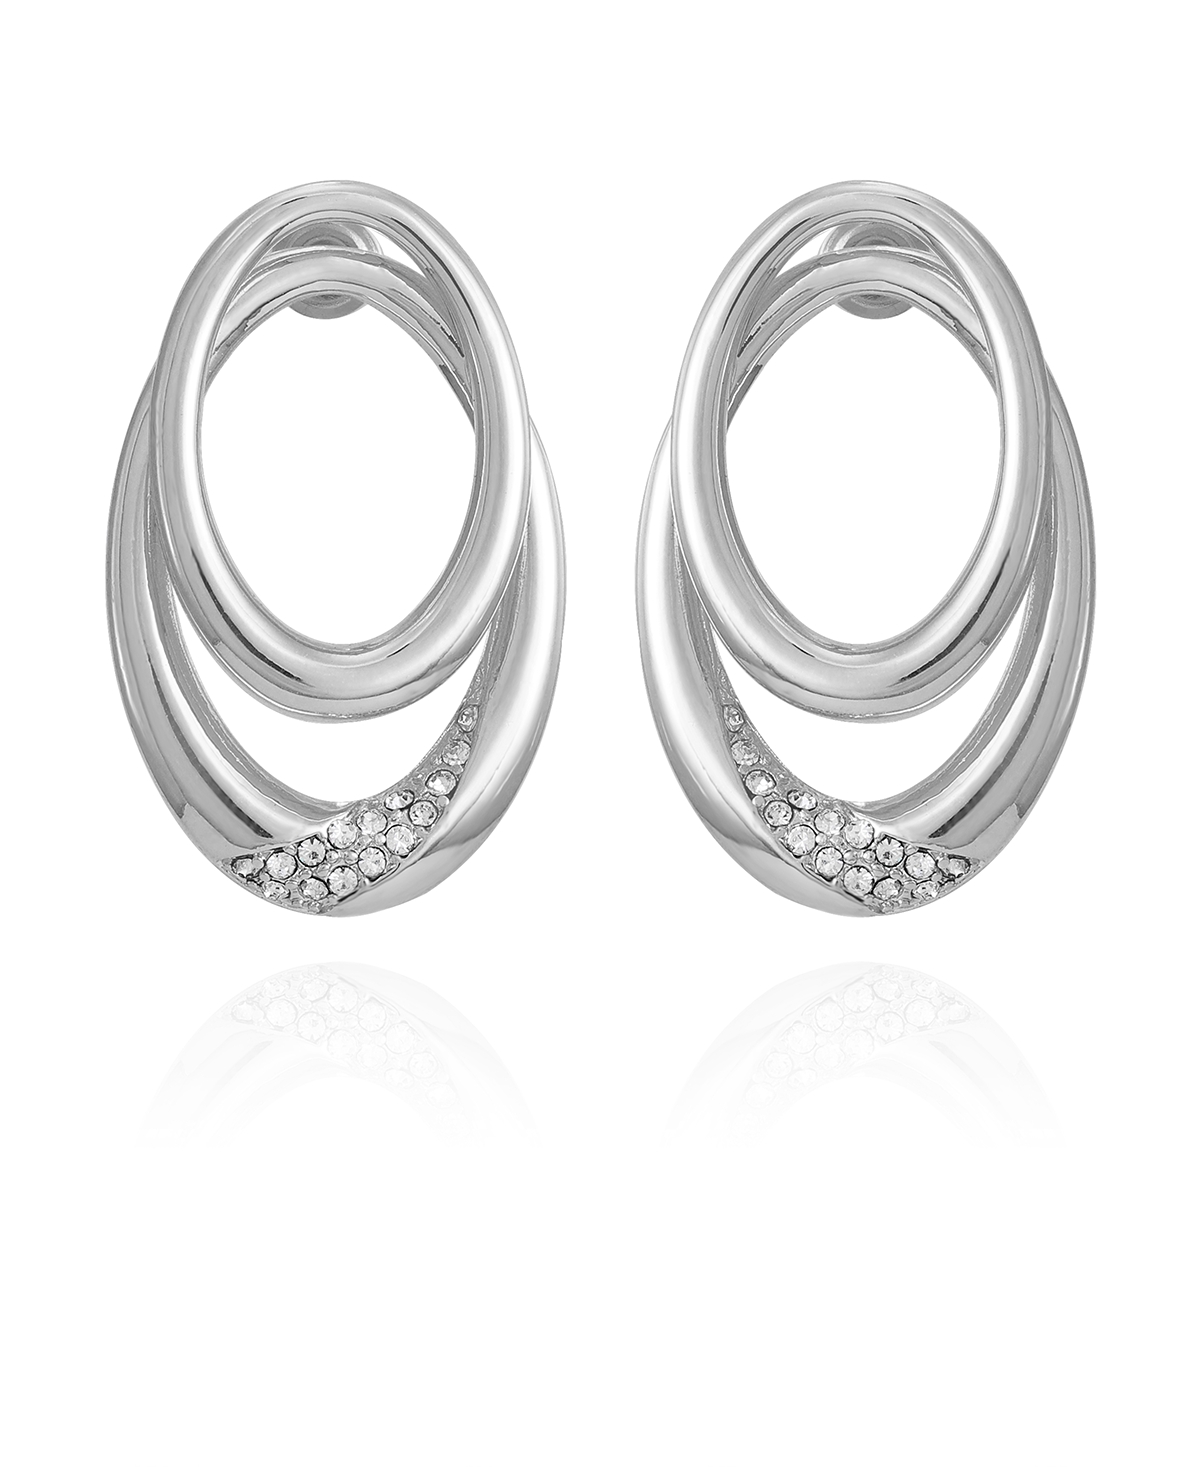 Silver-Tone Glass Stone Double Hoop Earrings - Silver